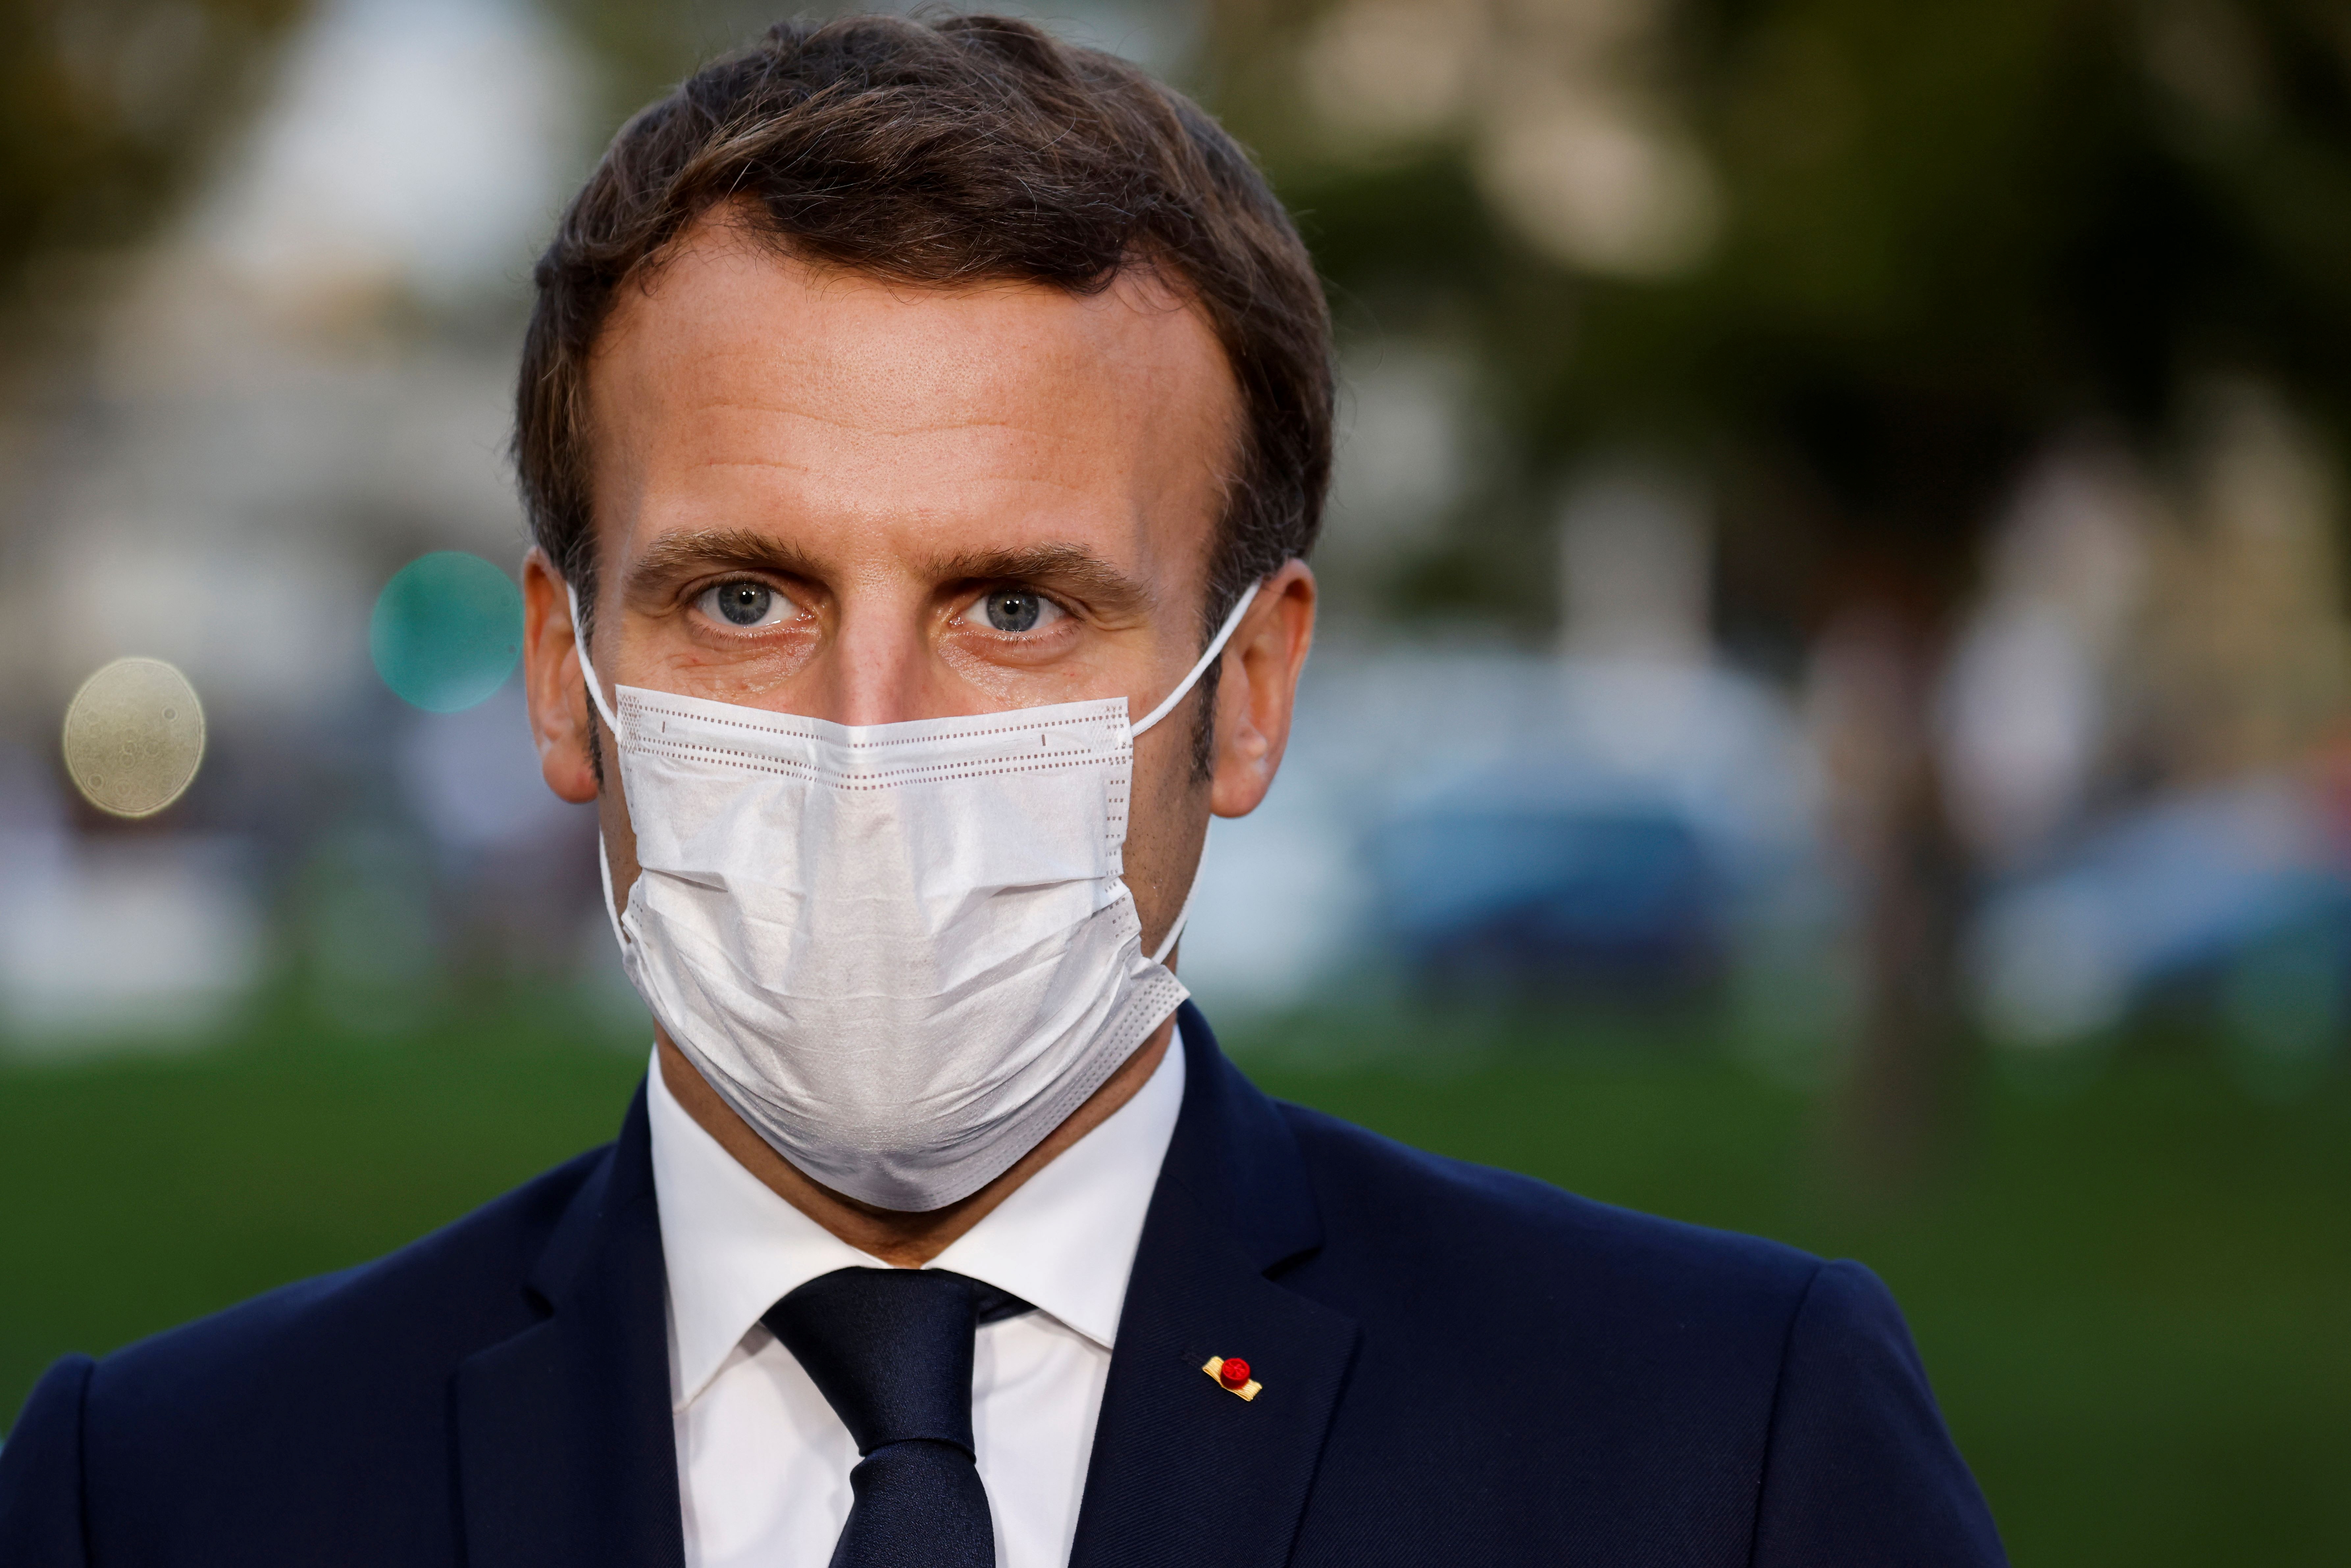 Ce soir, Macron s'adresse aux Français pour leur donner un cap et un peu d'espoir